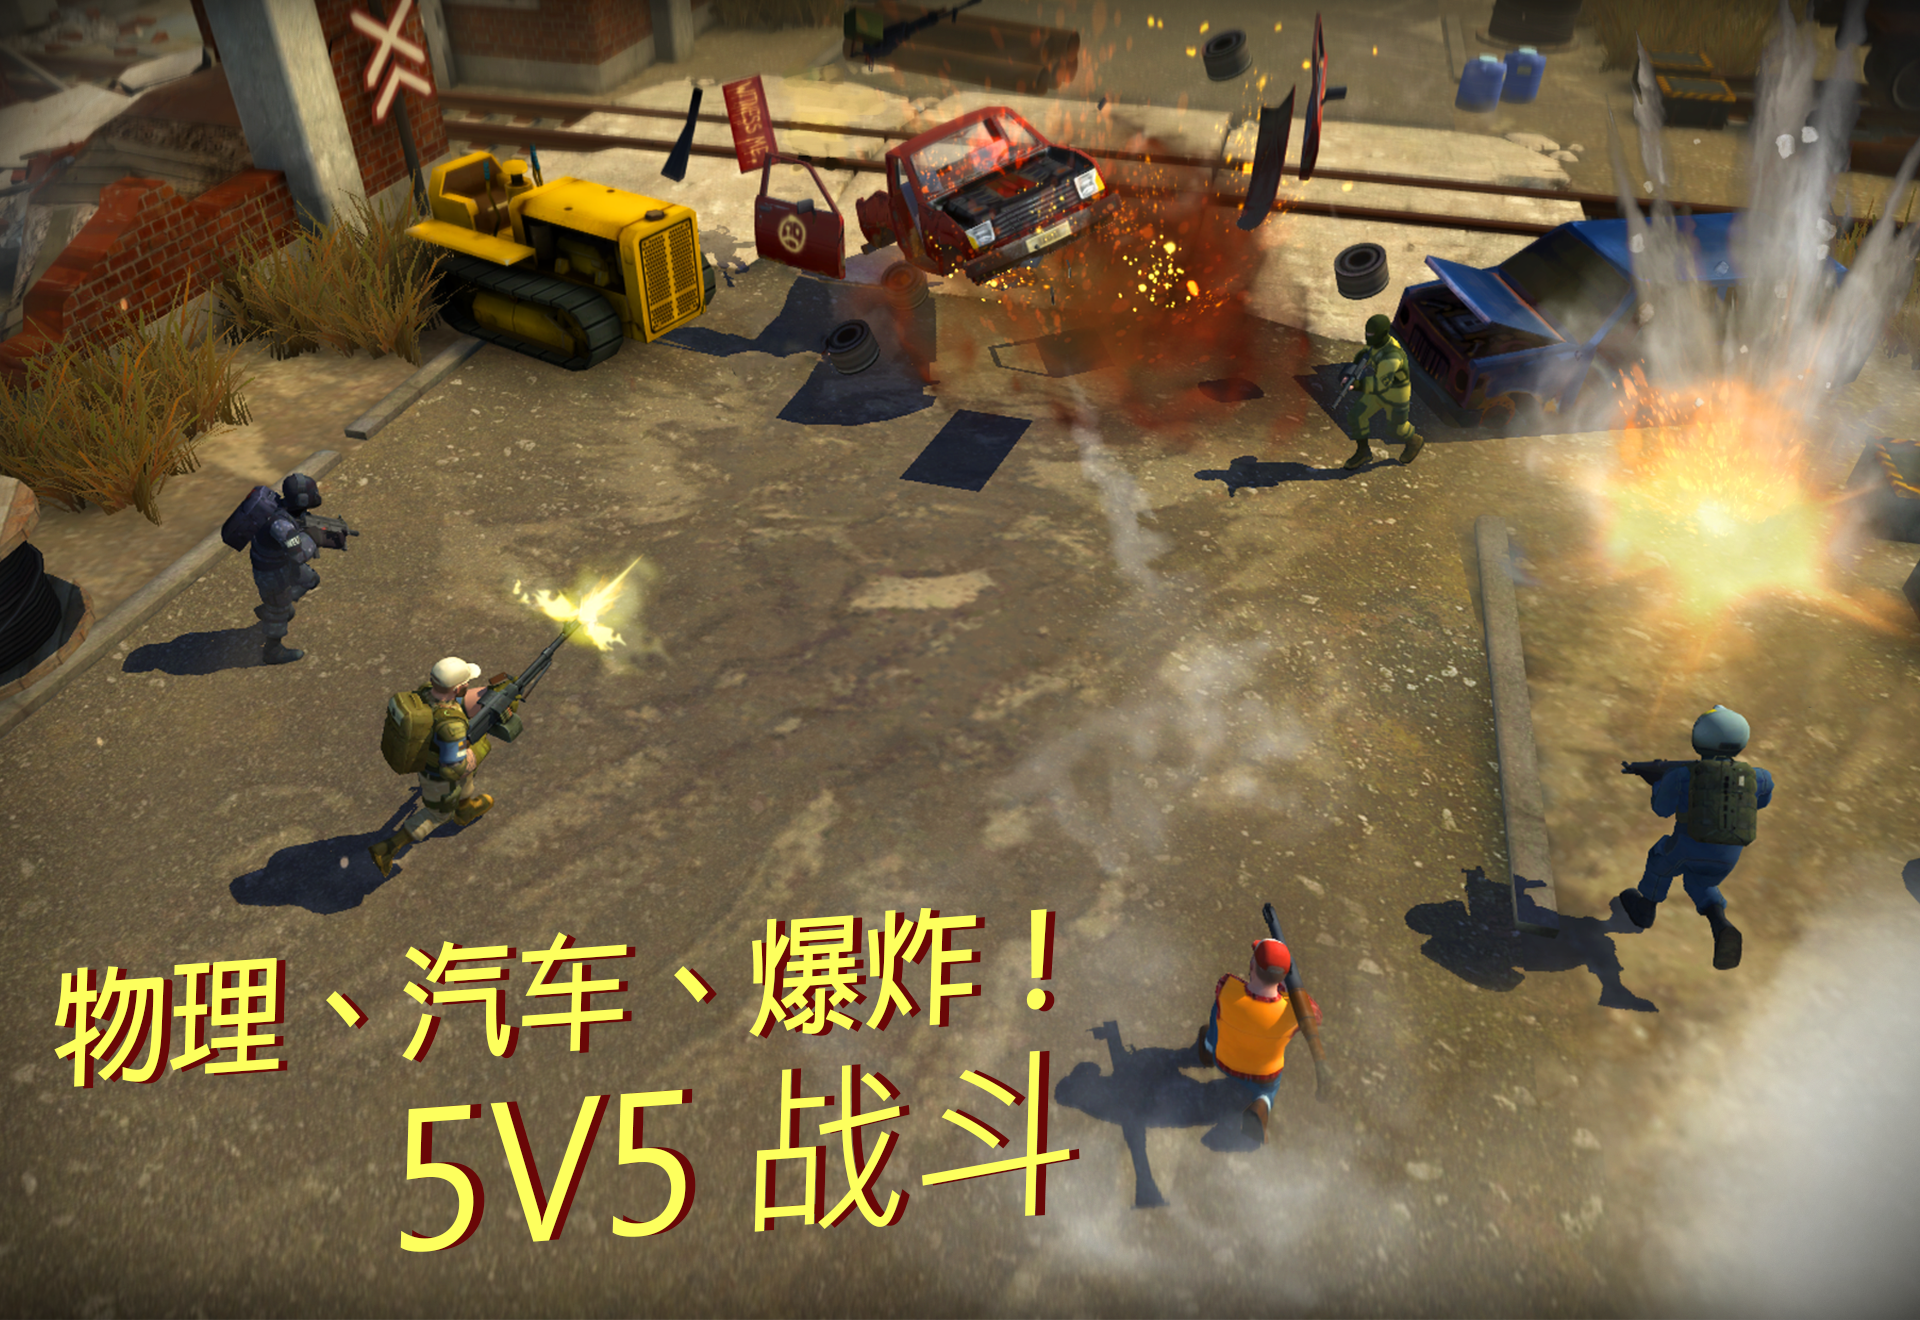 Screenshot 1 of Tacticool - Game bắn súng 5v5 1.52.0